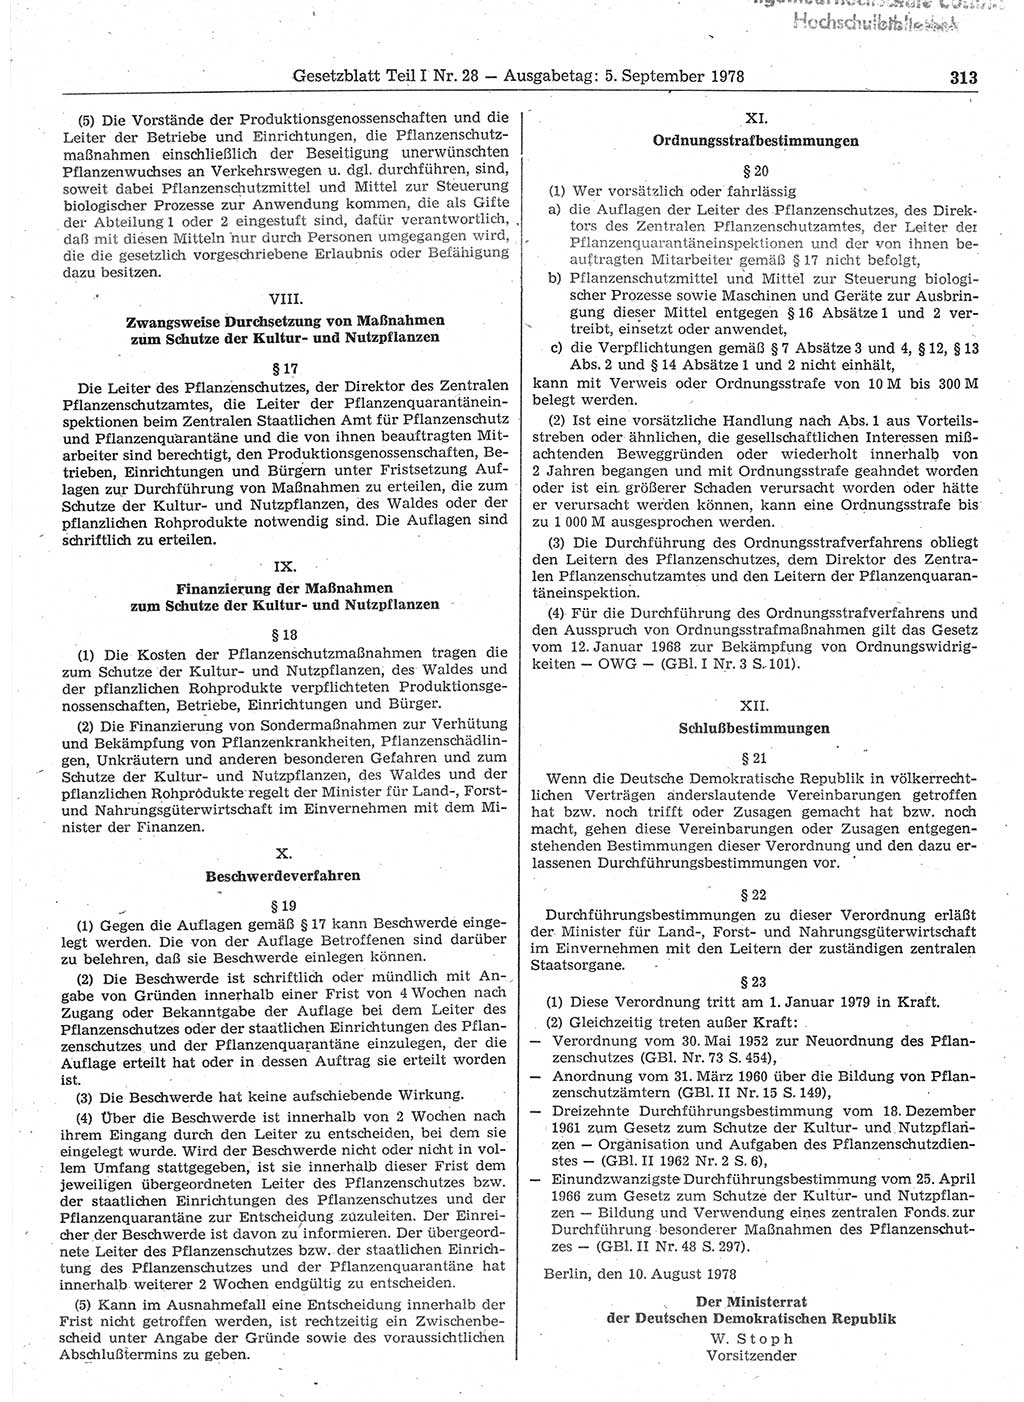 Gesetzblatt (GBl.) der Deutschen Demokratischen Republik (DDR) Teil Ⅰ 1978, Seite 313 (GBl. DDR Ⅰ 1978, S. 313)